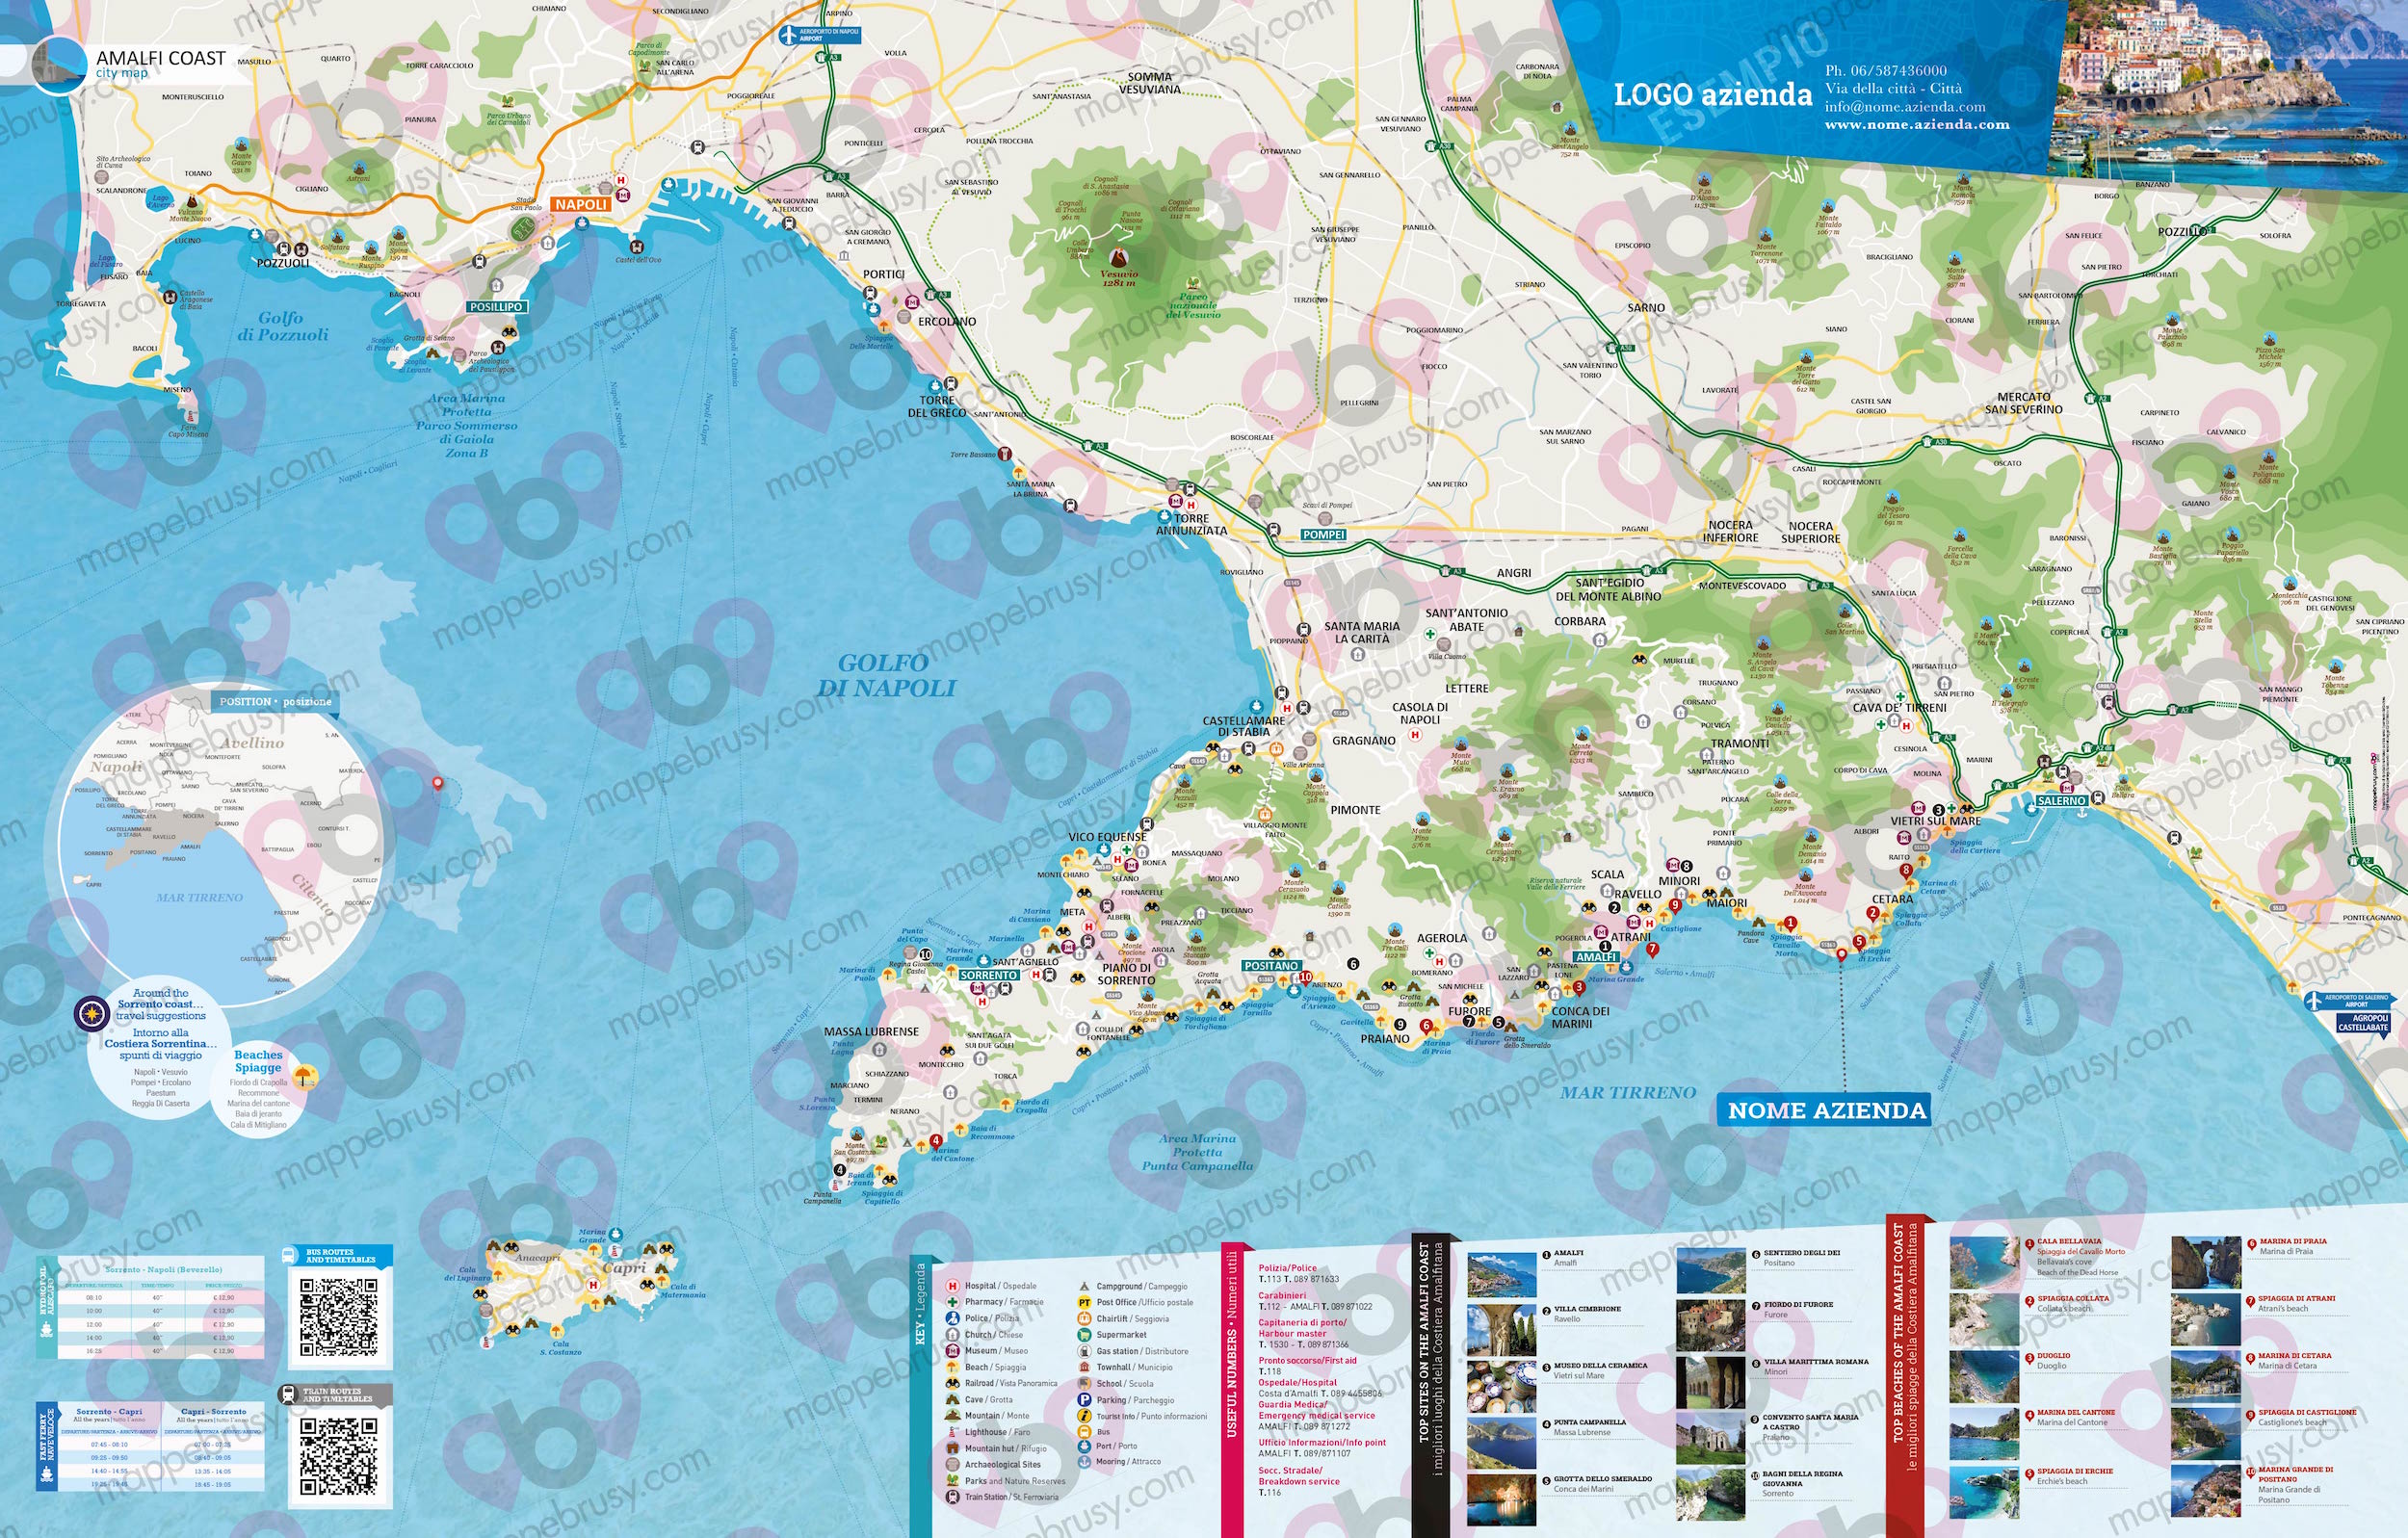 Mappa Costiera Amalfitana - Amalfi Coast city map - mappa Costiera Amalfitana - mappa personalizzata Costiera Amalfitana